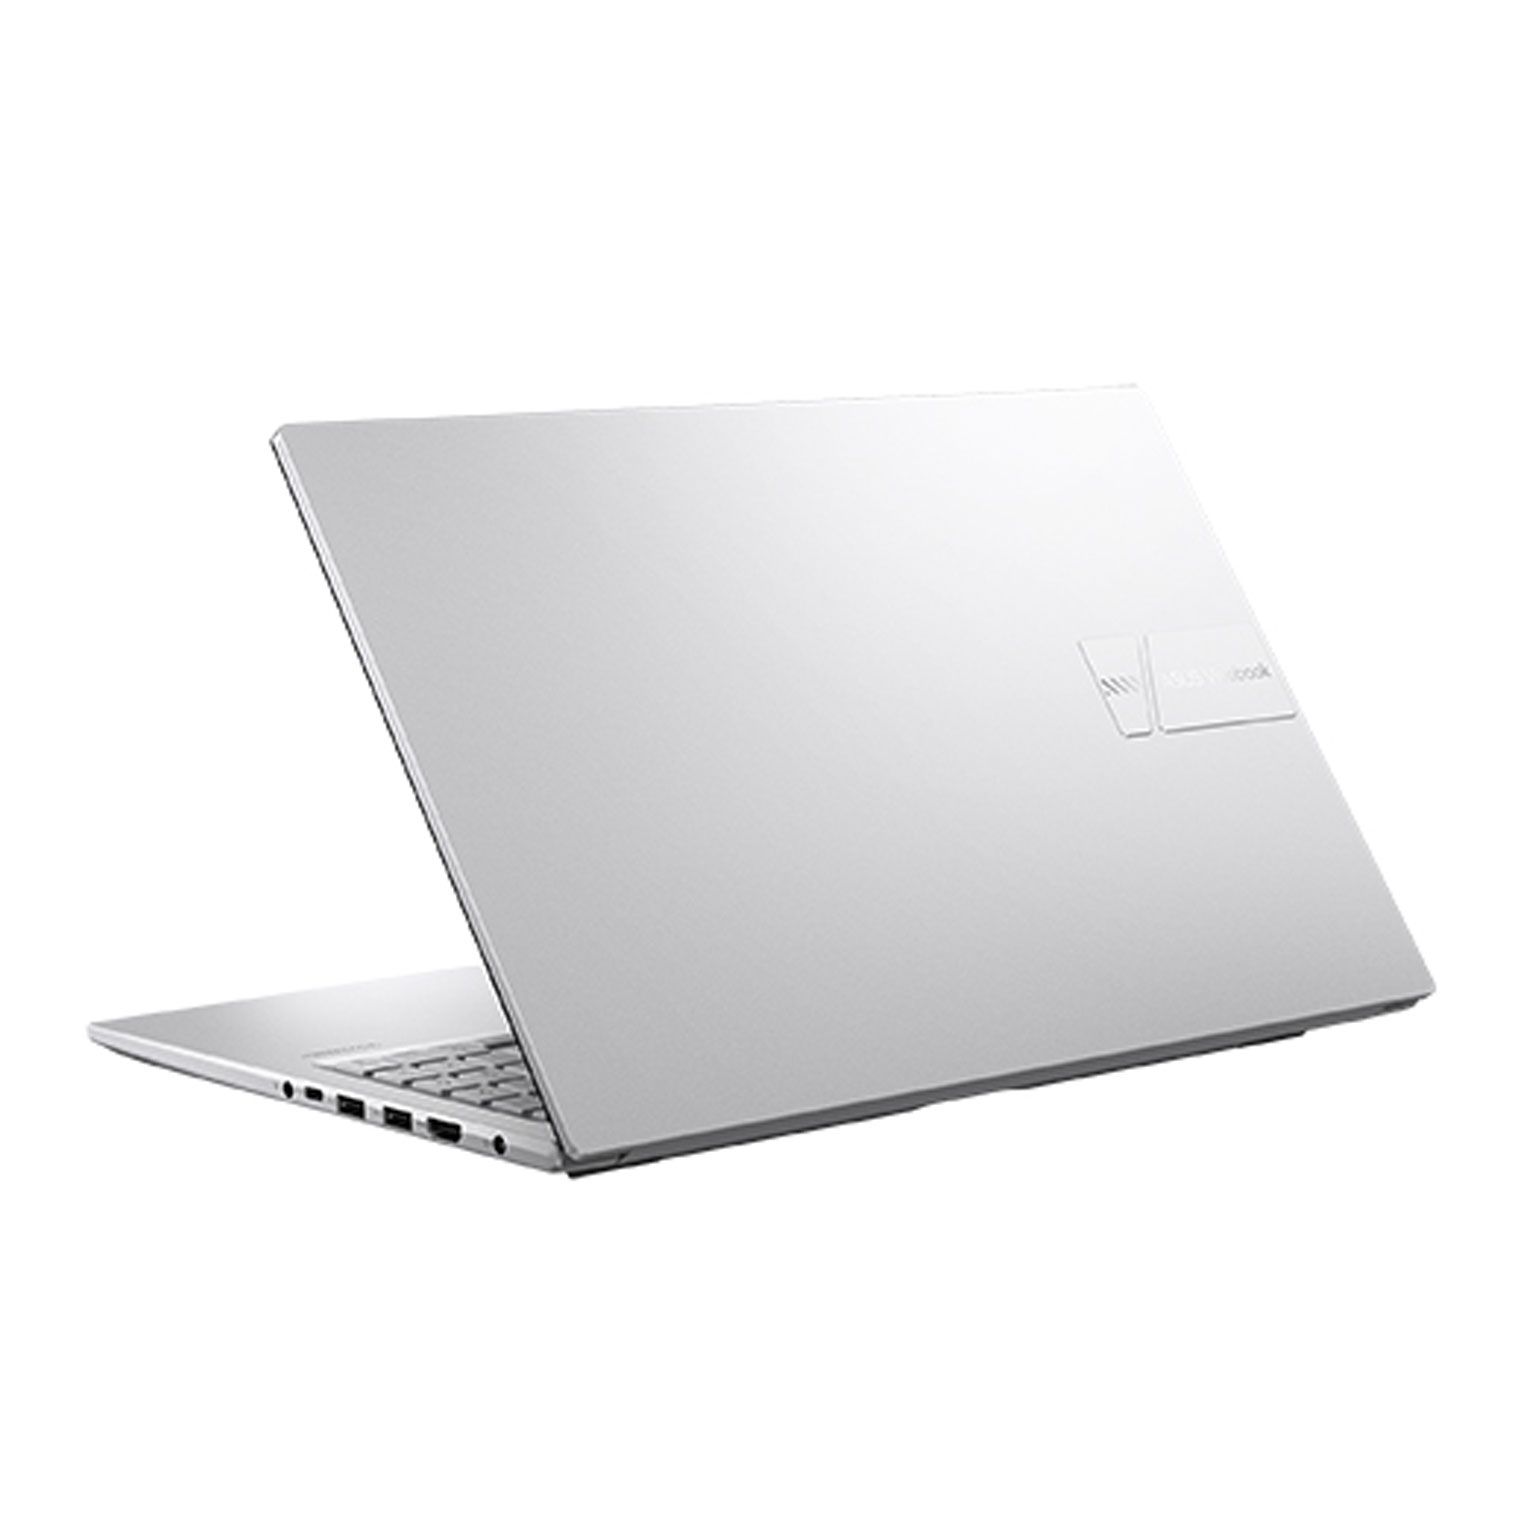 Laptop ASUS Vivobook X1504ZA NJ582W